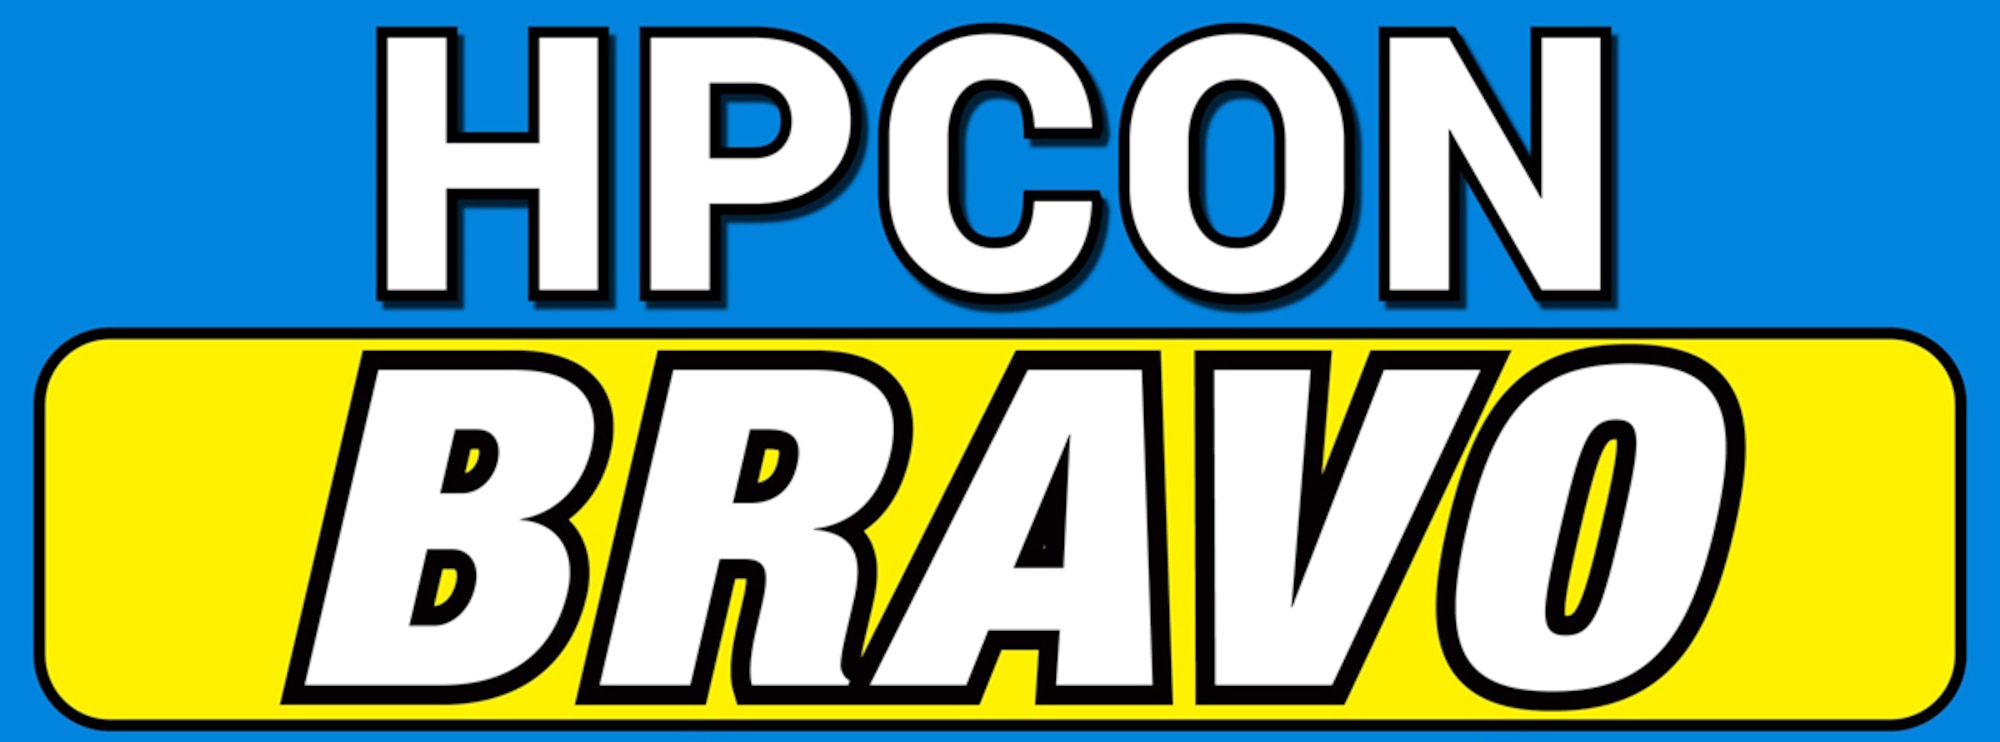 HPCON Bravo Banner